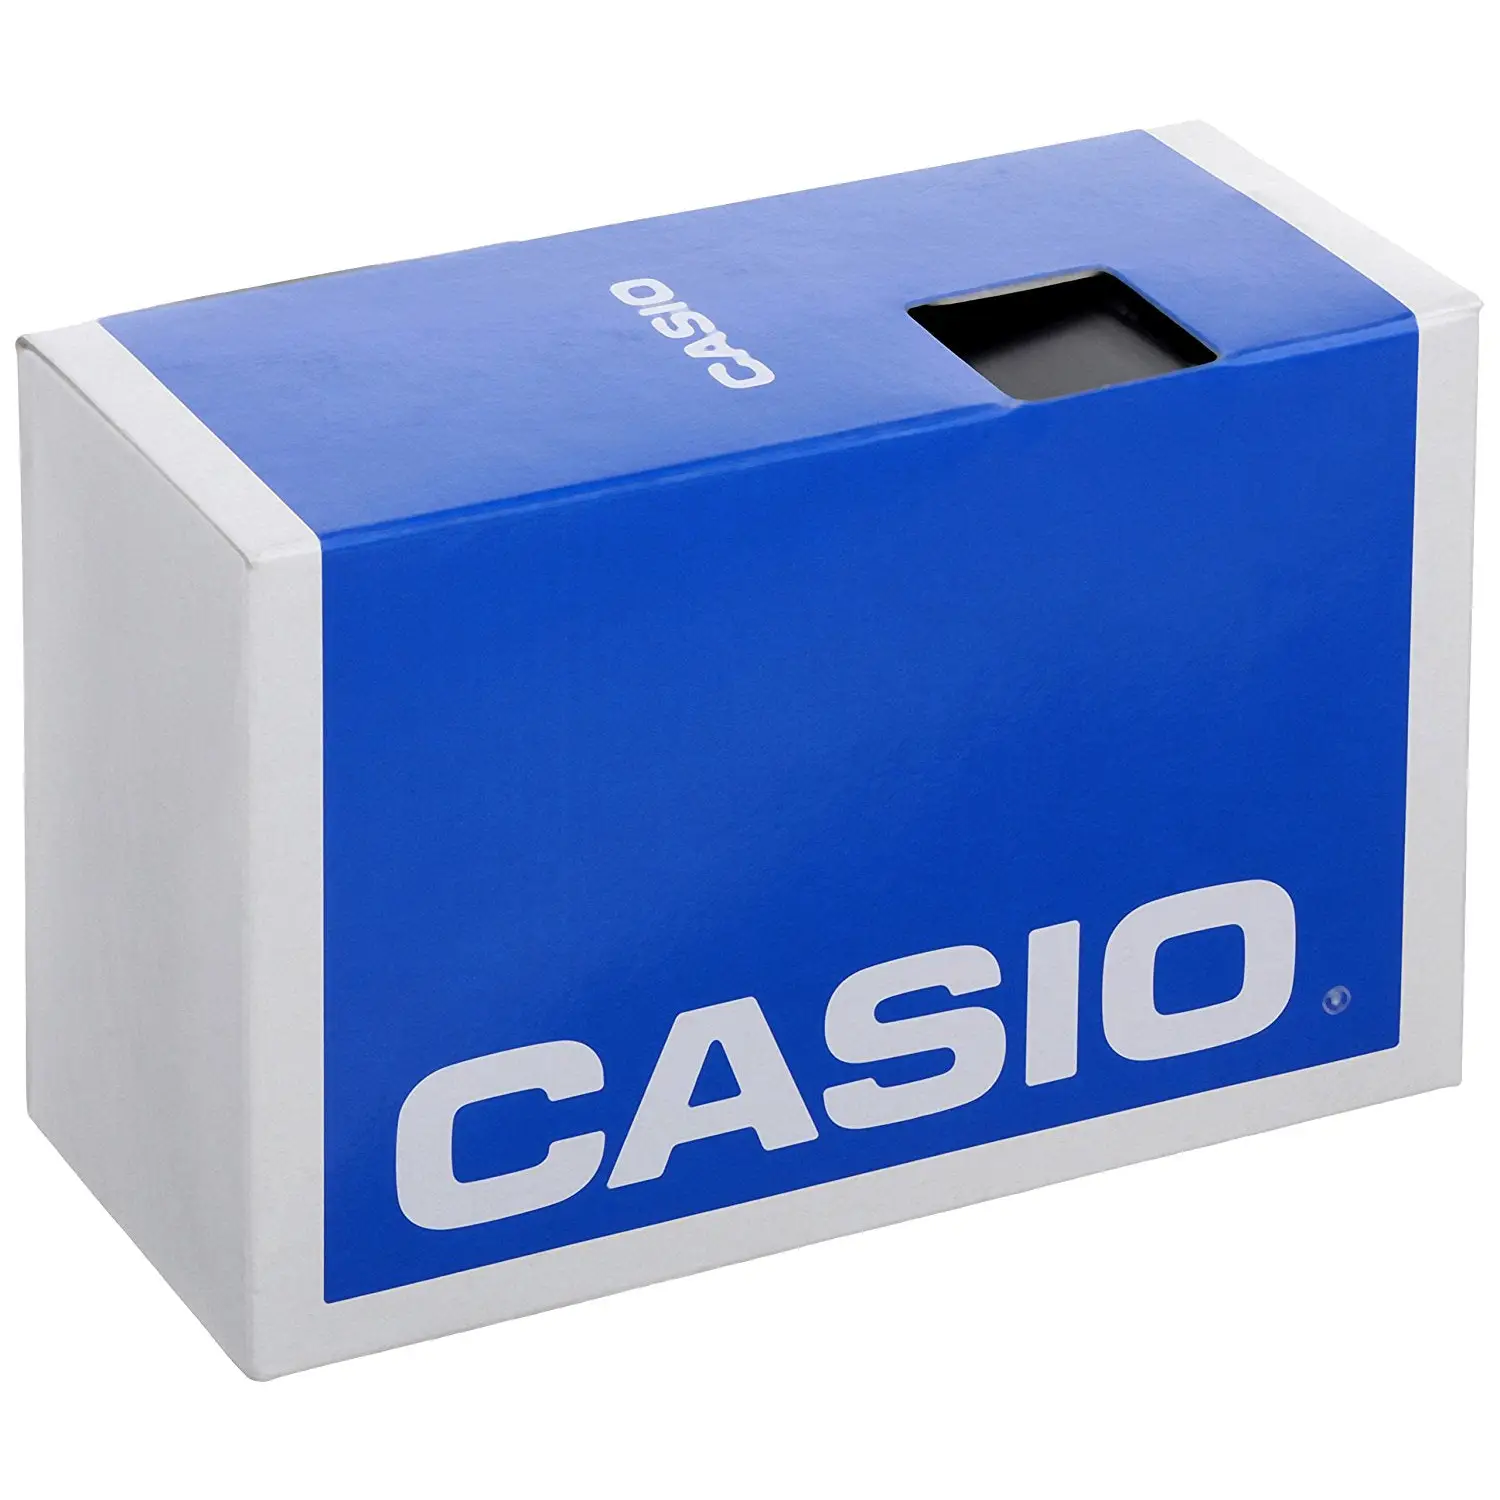 Casio Men’S Edifice Quartz Two Tone Stainless Steel 100m